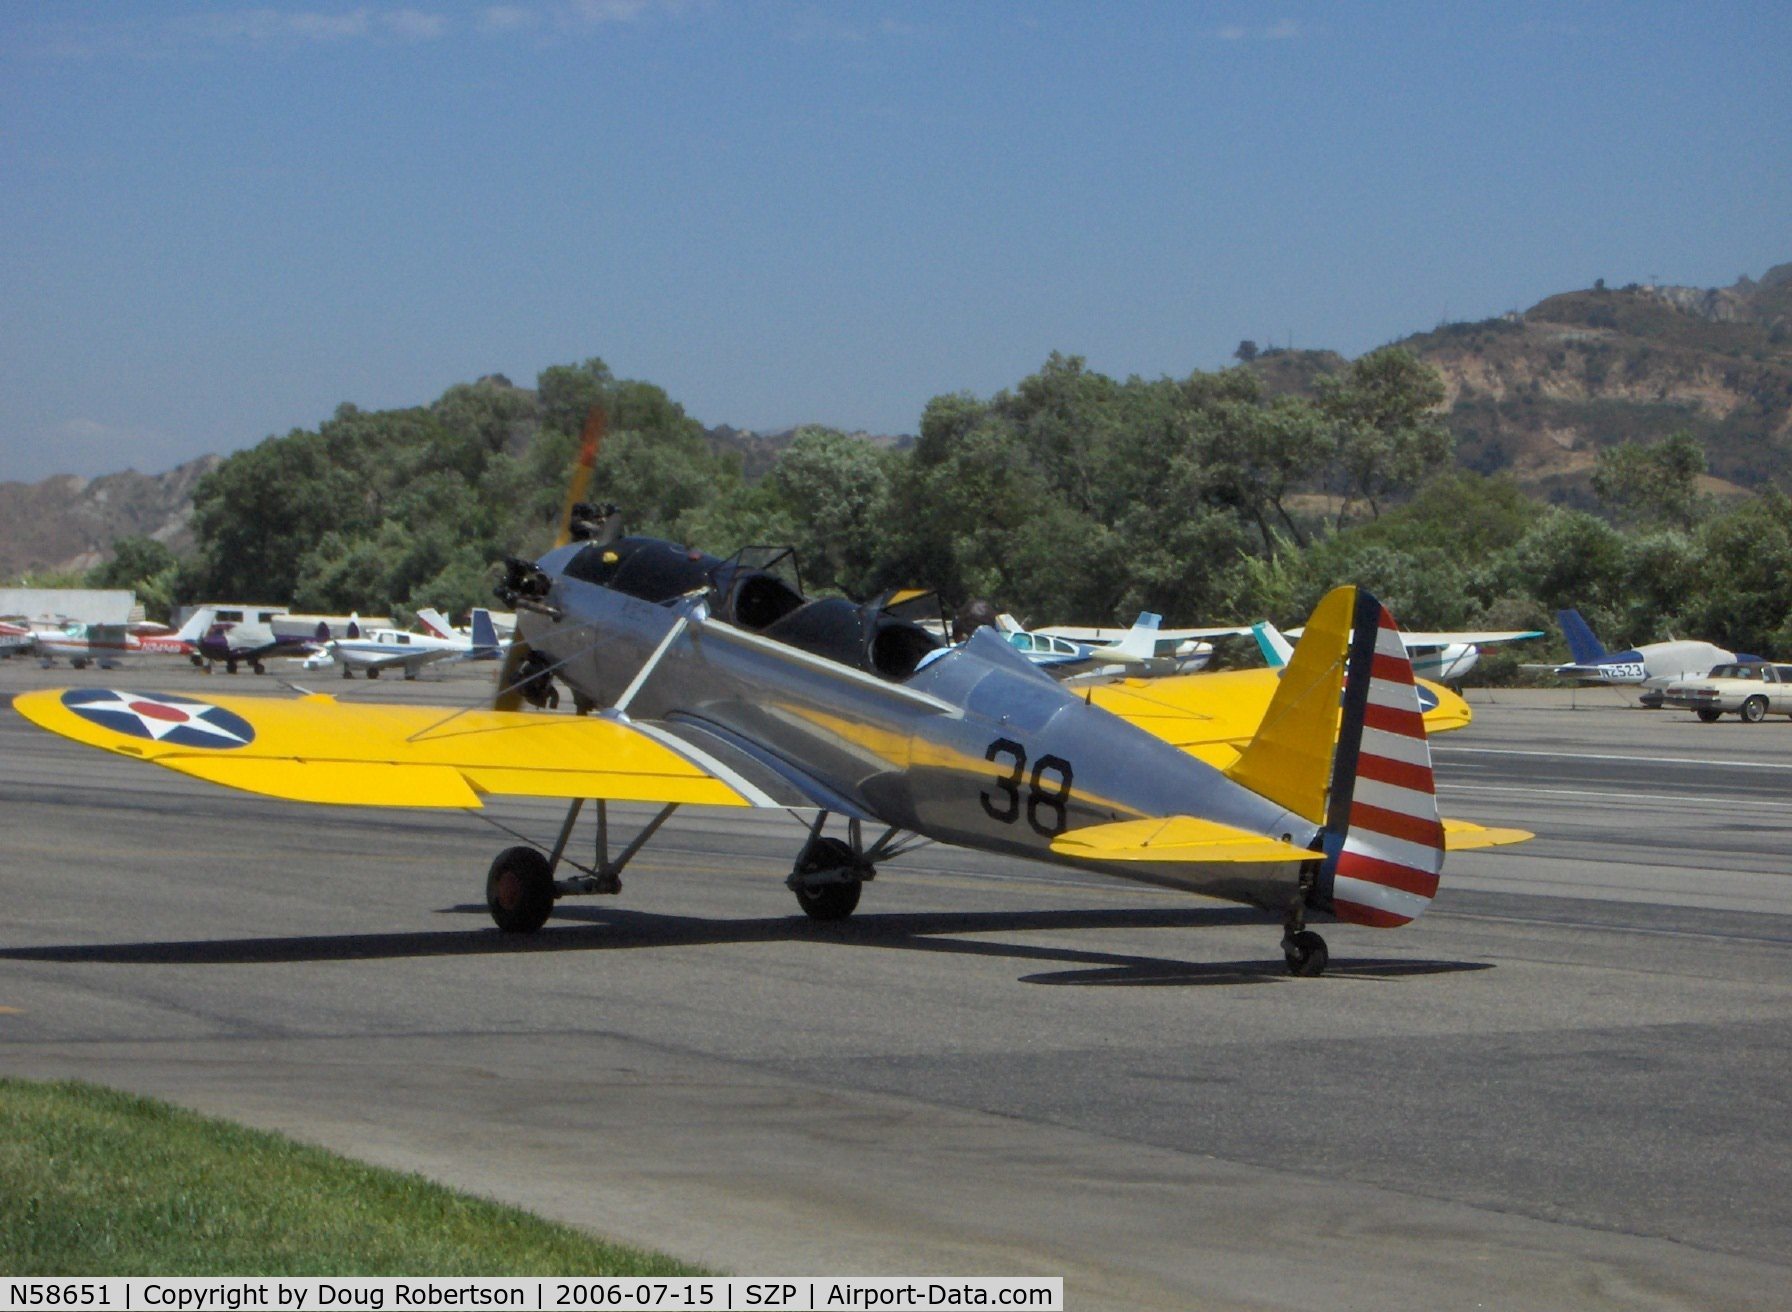 N58651, 1941 Ryan PT-22 Recruit (ST3KR) C/N 1426, 1941 Ryan Aeronautical ST-3KR as PT-22, Kinner R5 160 Hp, taxi to Runway 22